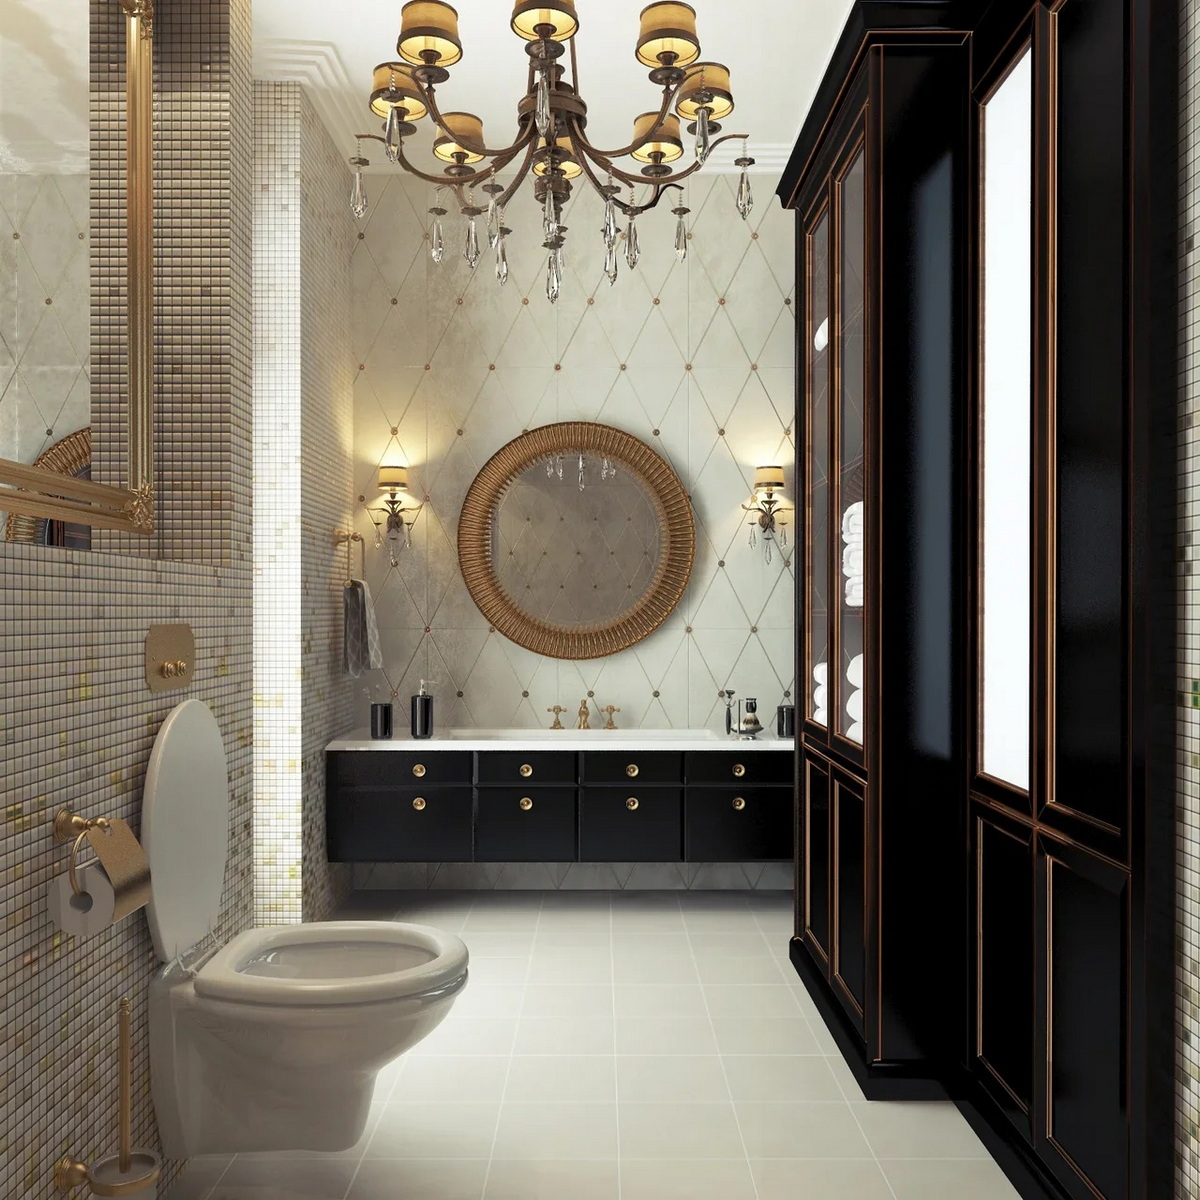 Дизайн интерьера ванной комнаты - студия архитектуры и дизайна интерьера Anna Shats